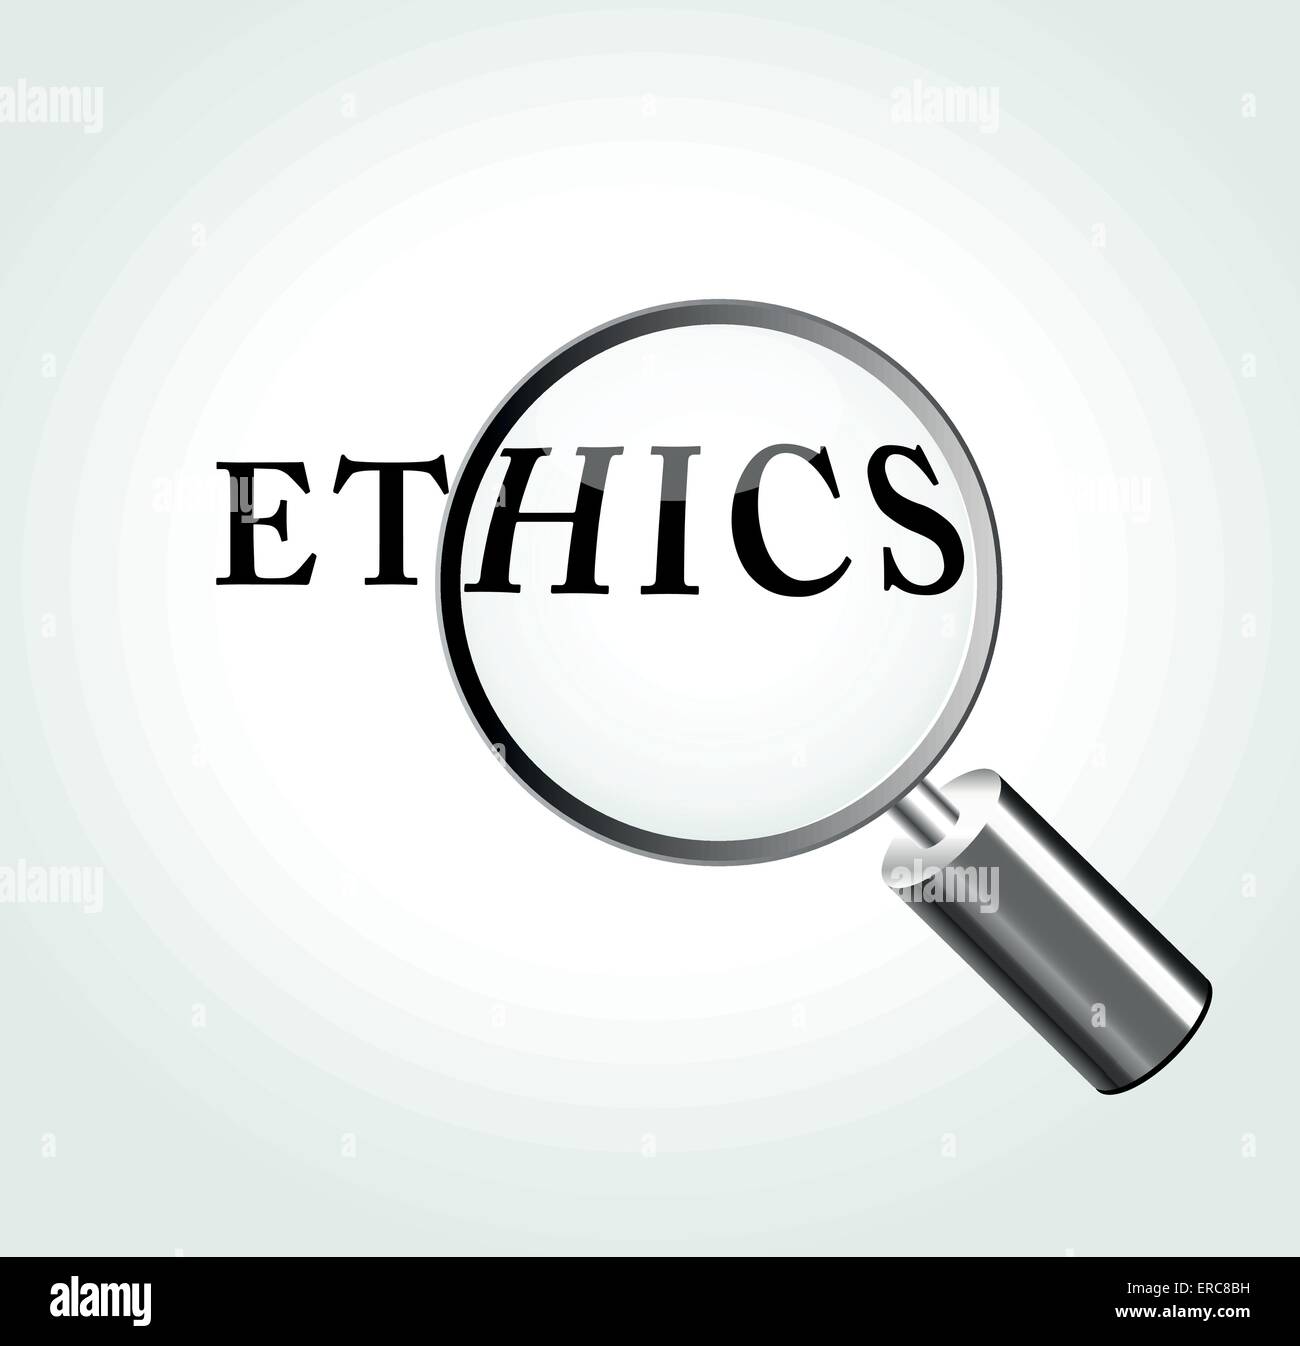 Illustrazione Vettoriale del concetto di etica con ingrandimento Illustrazione Vettoriale